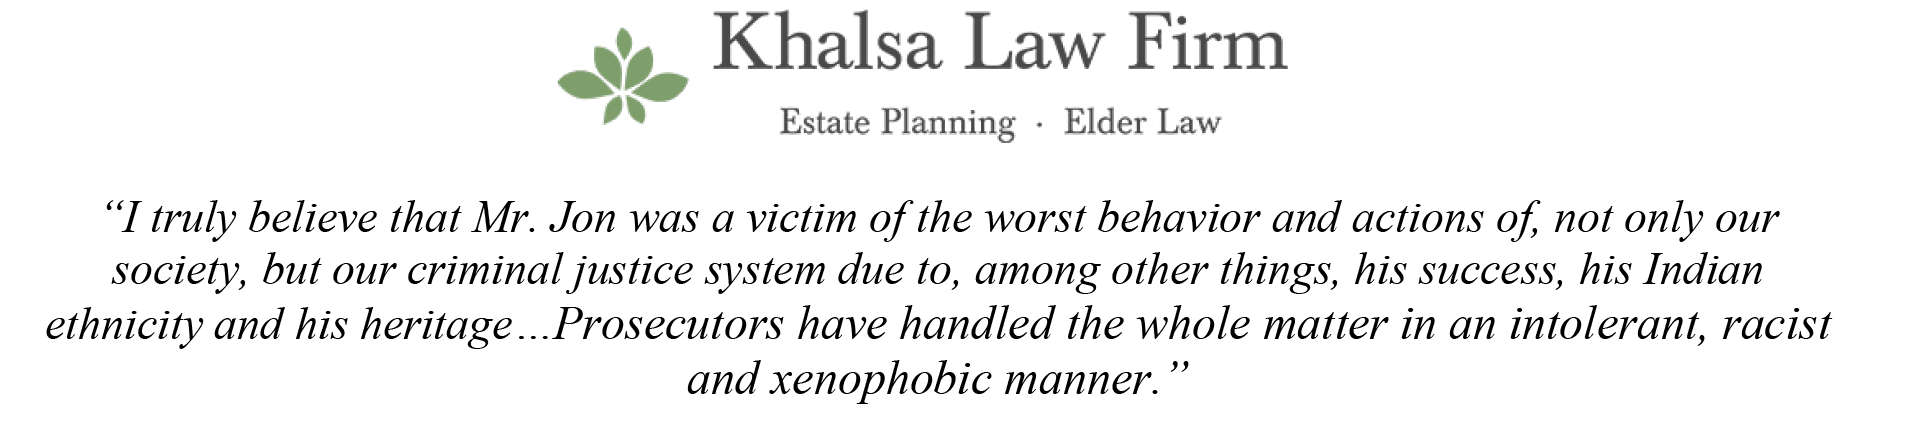 Khalsa Law Firm